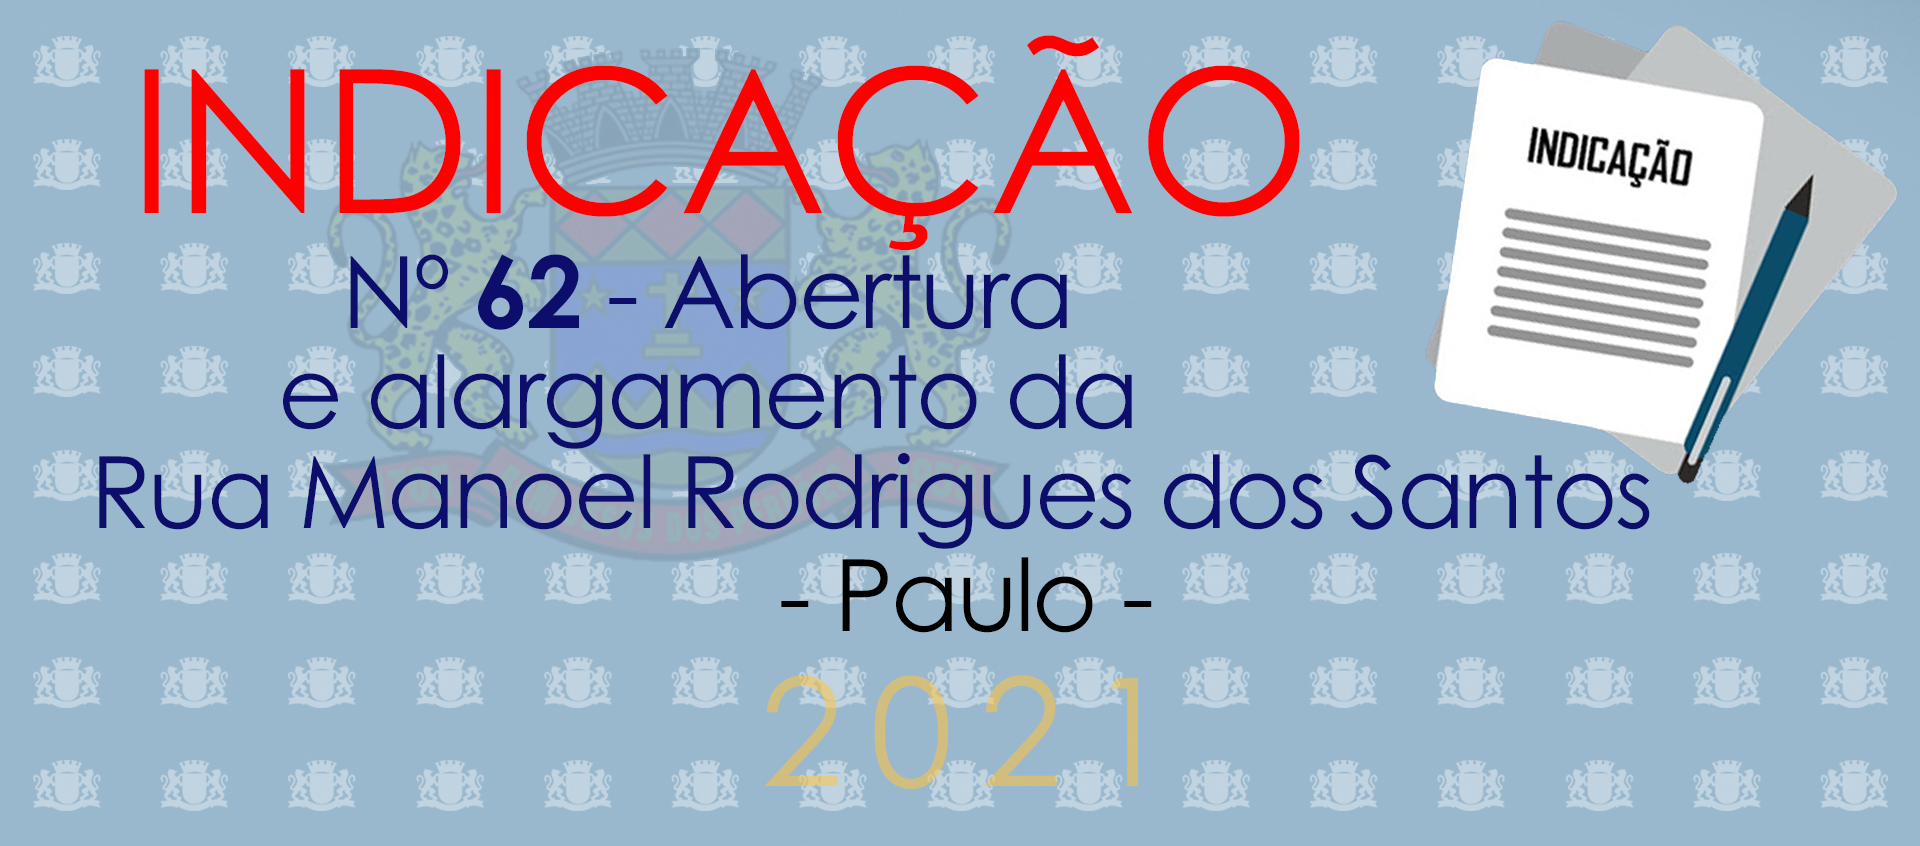 Indicação 62-2021 - Revitalização da Rua Manoel Rodrigues dos Santos - Paulo